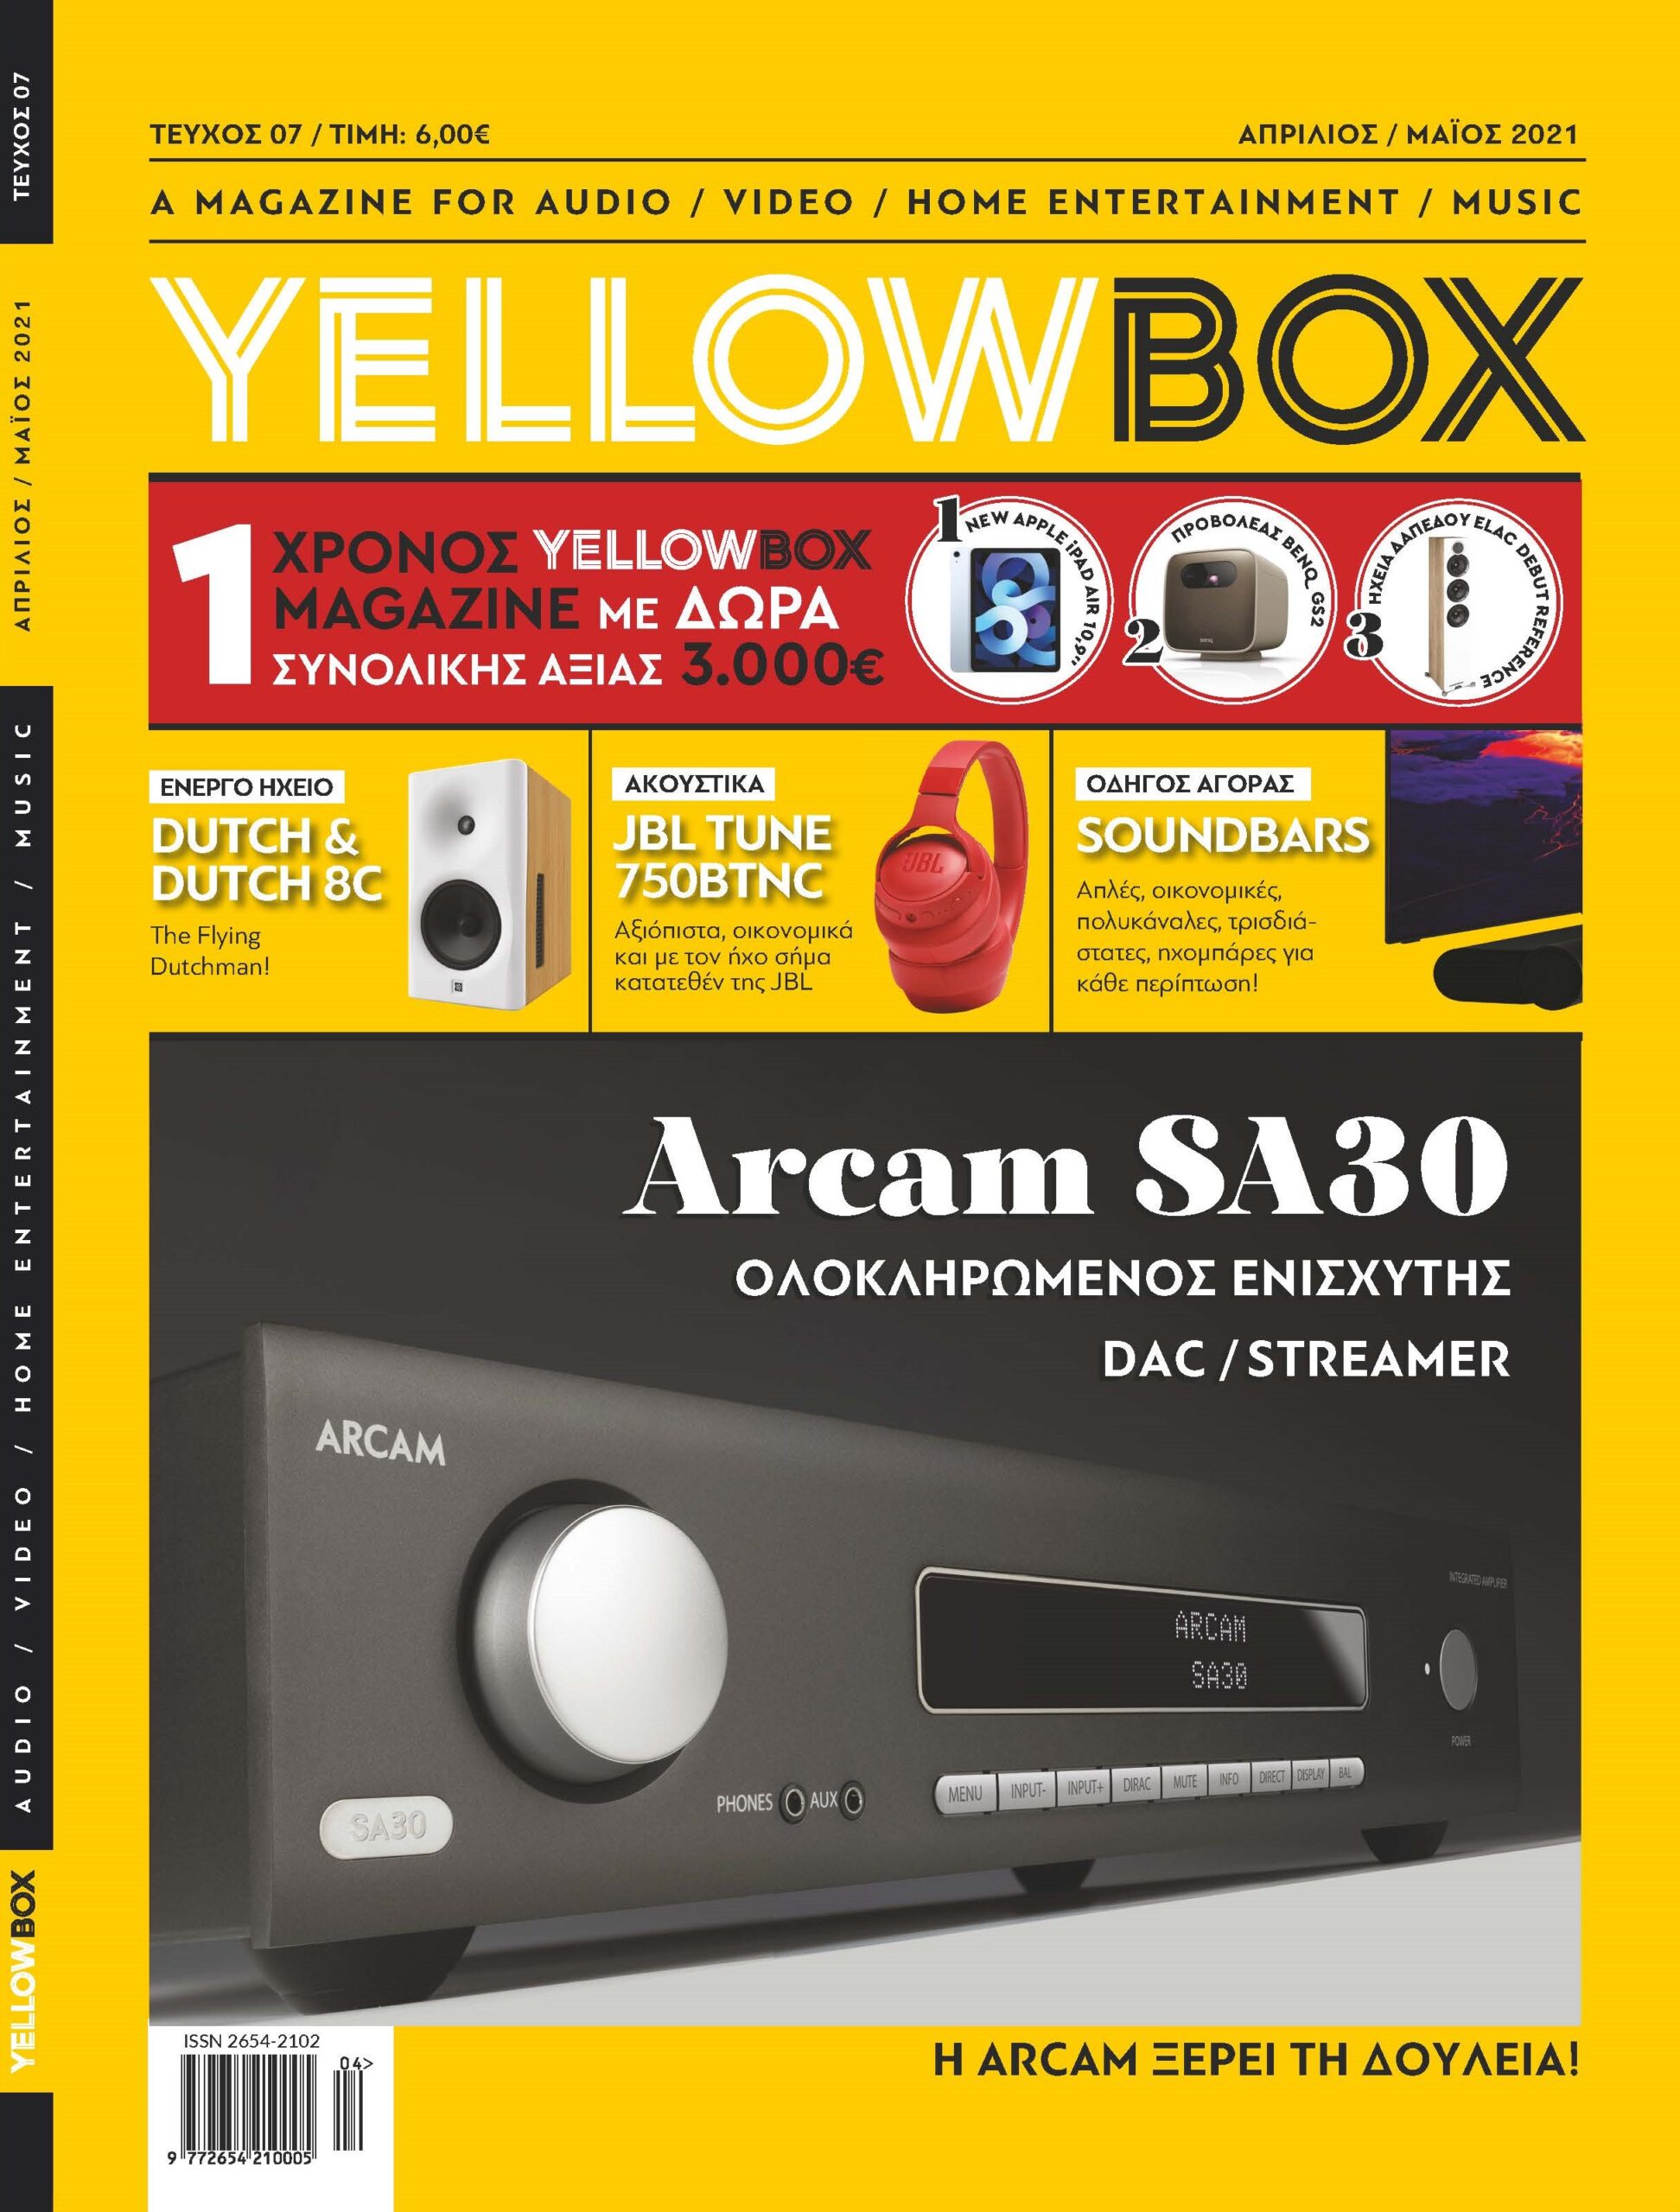 www.yellowbox.gr